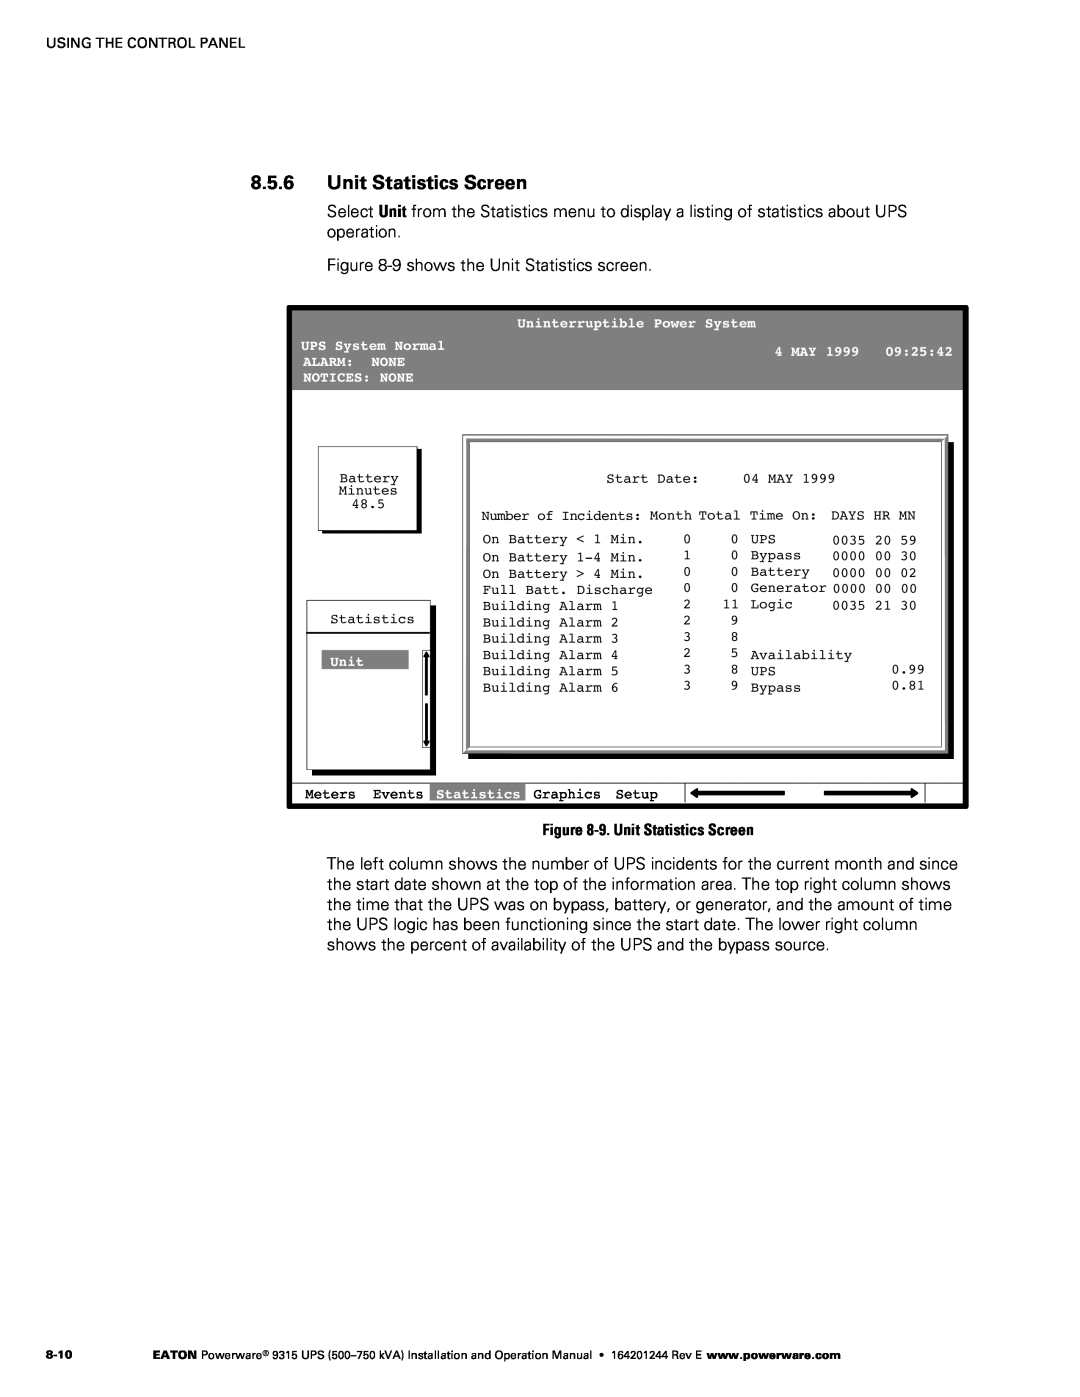 Powerware Powerware 9315 operation manual Unit Statistics Screen 